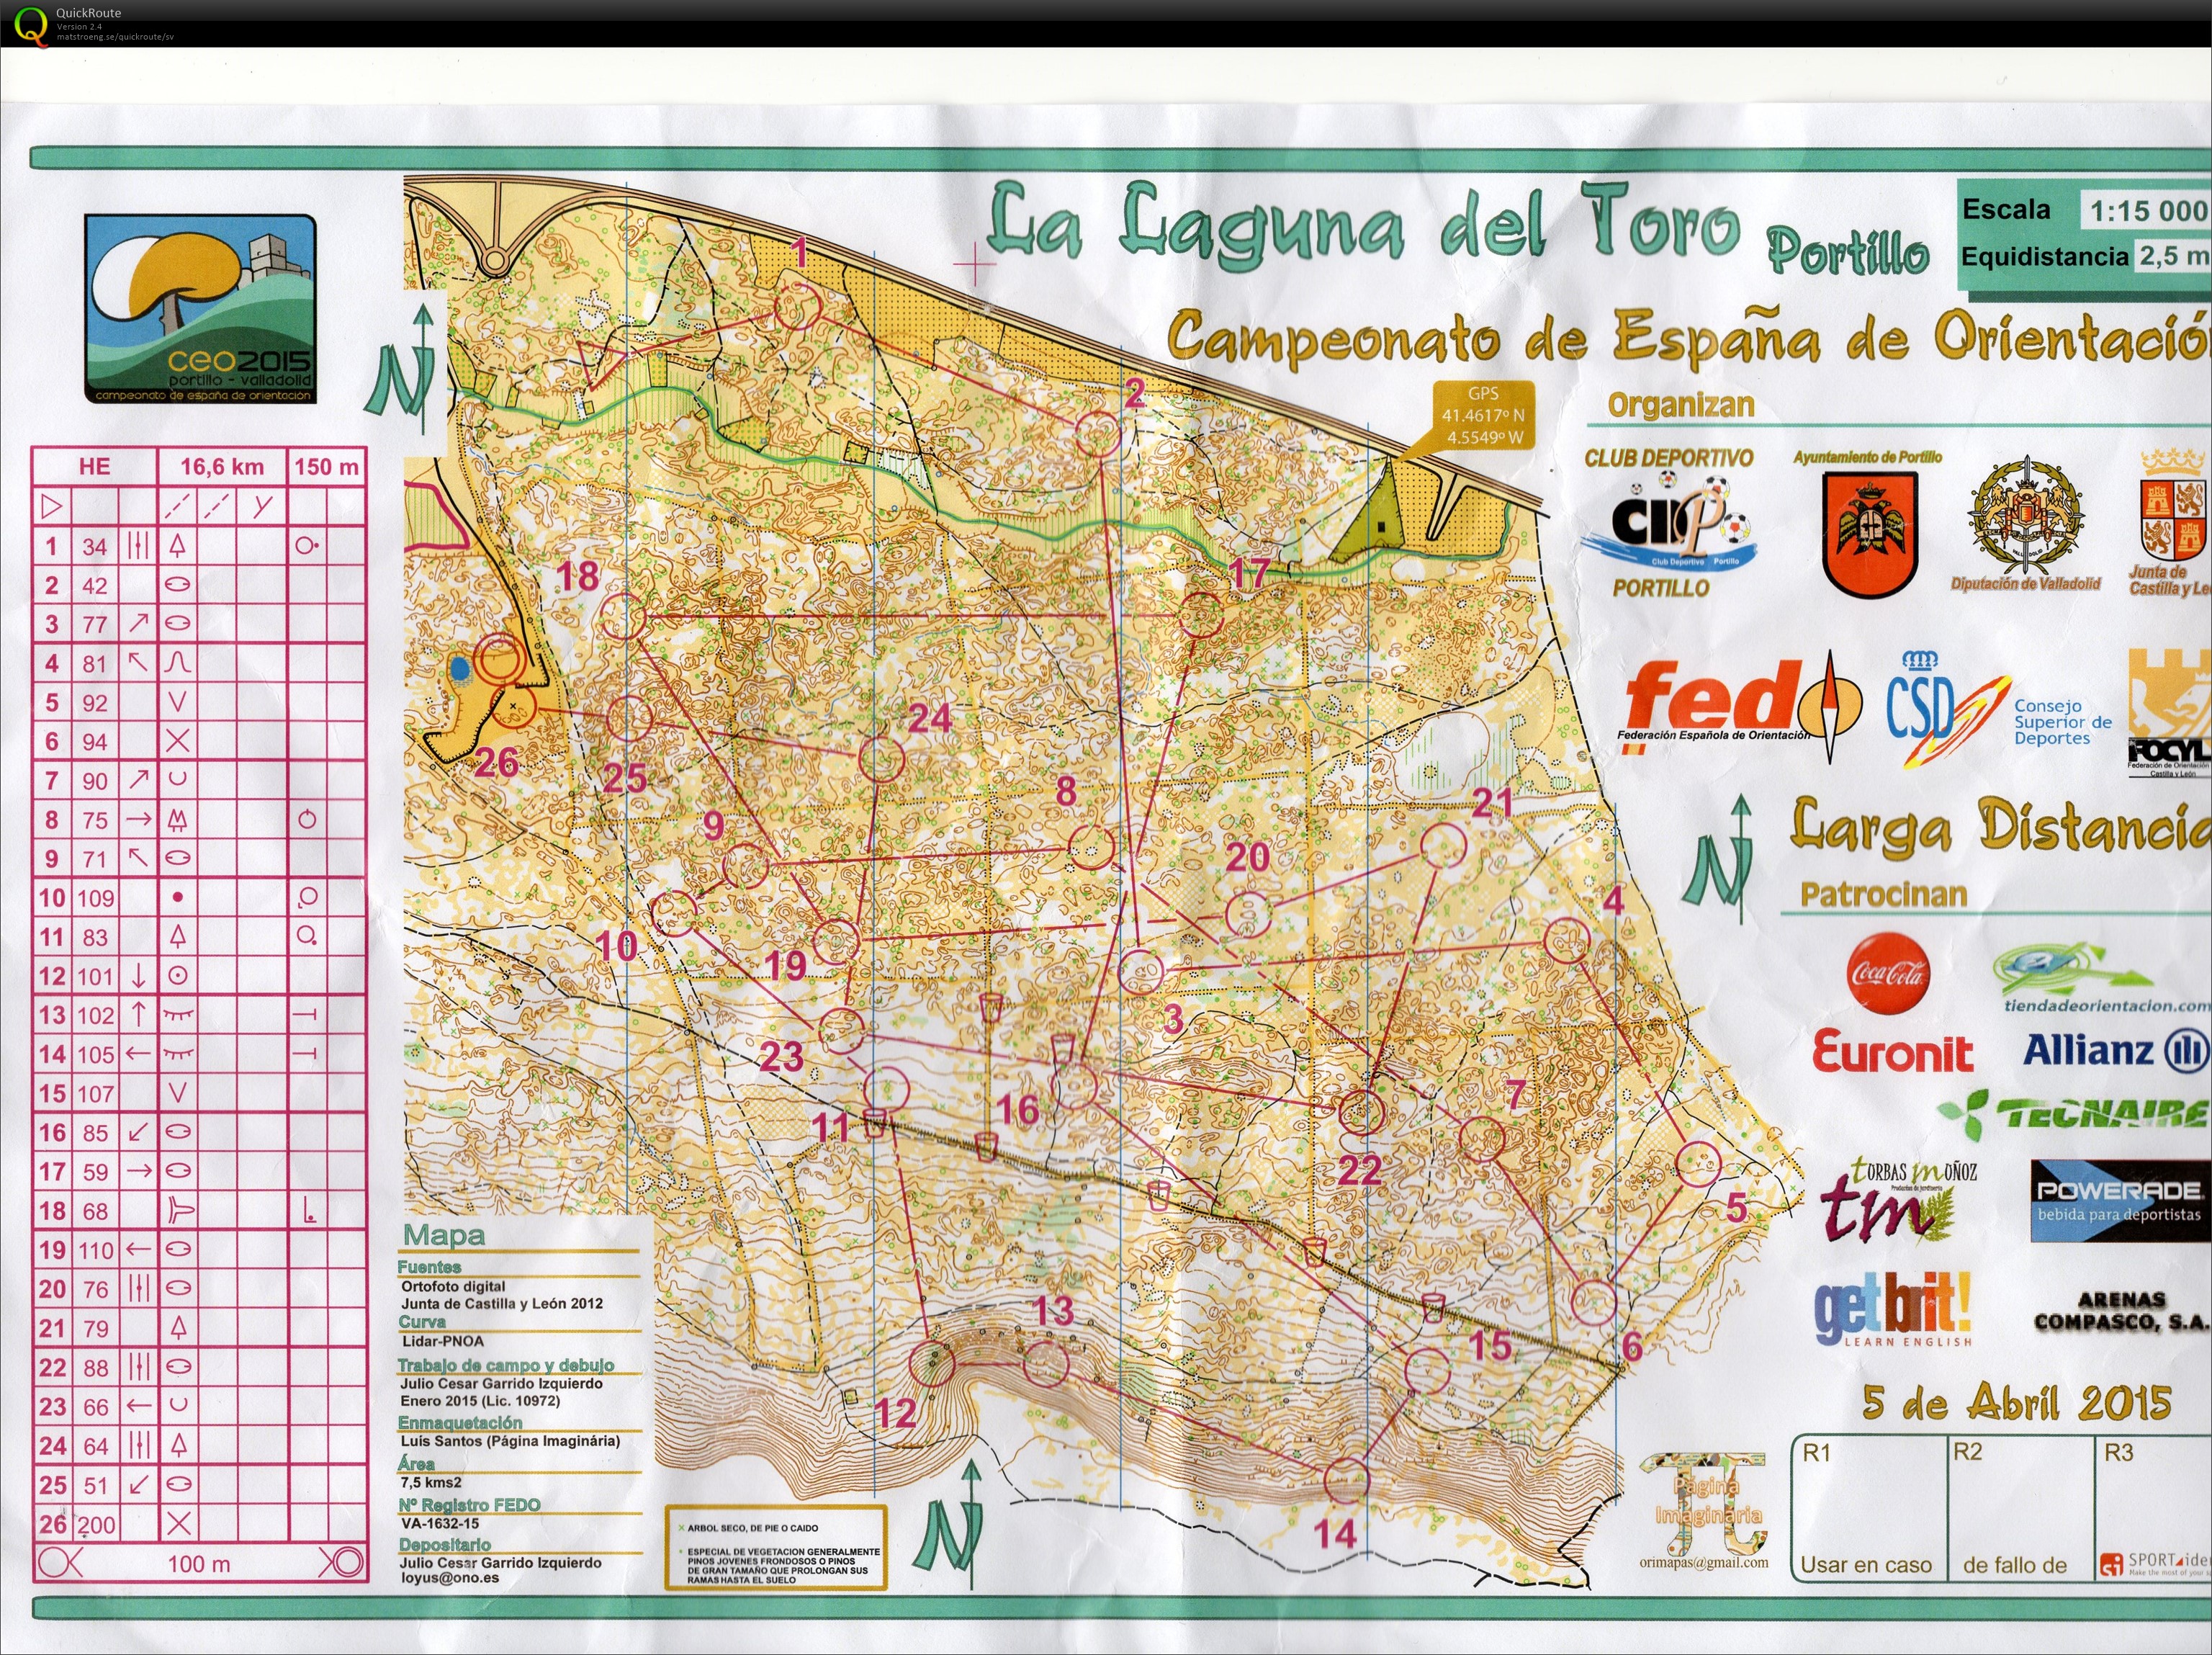 Campeonato de España de orientación (CEO)- Long (05-04-2015)